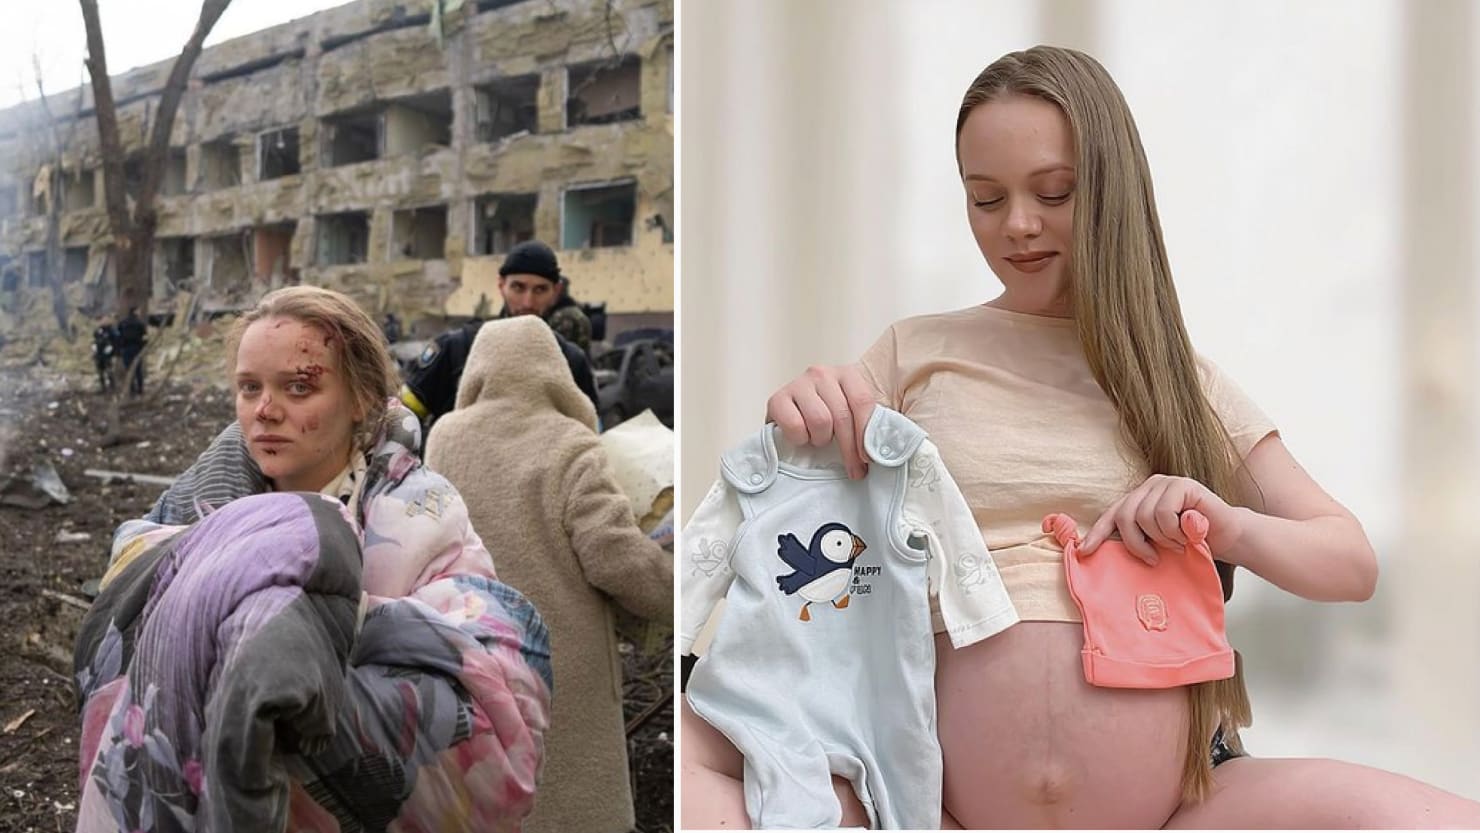 Rusia dice que la mujer embarazada herida es un actor de crisis. En realidad es una bloguera embarazada.